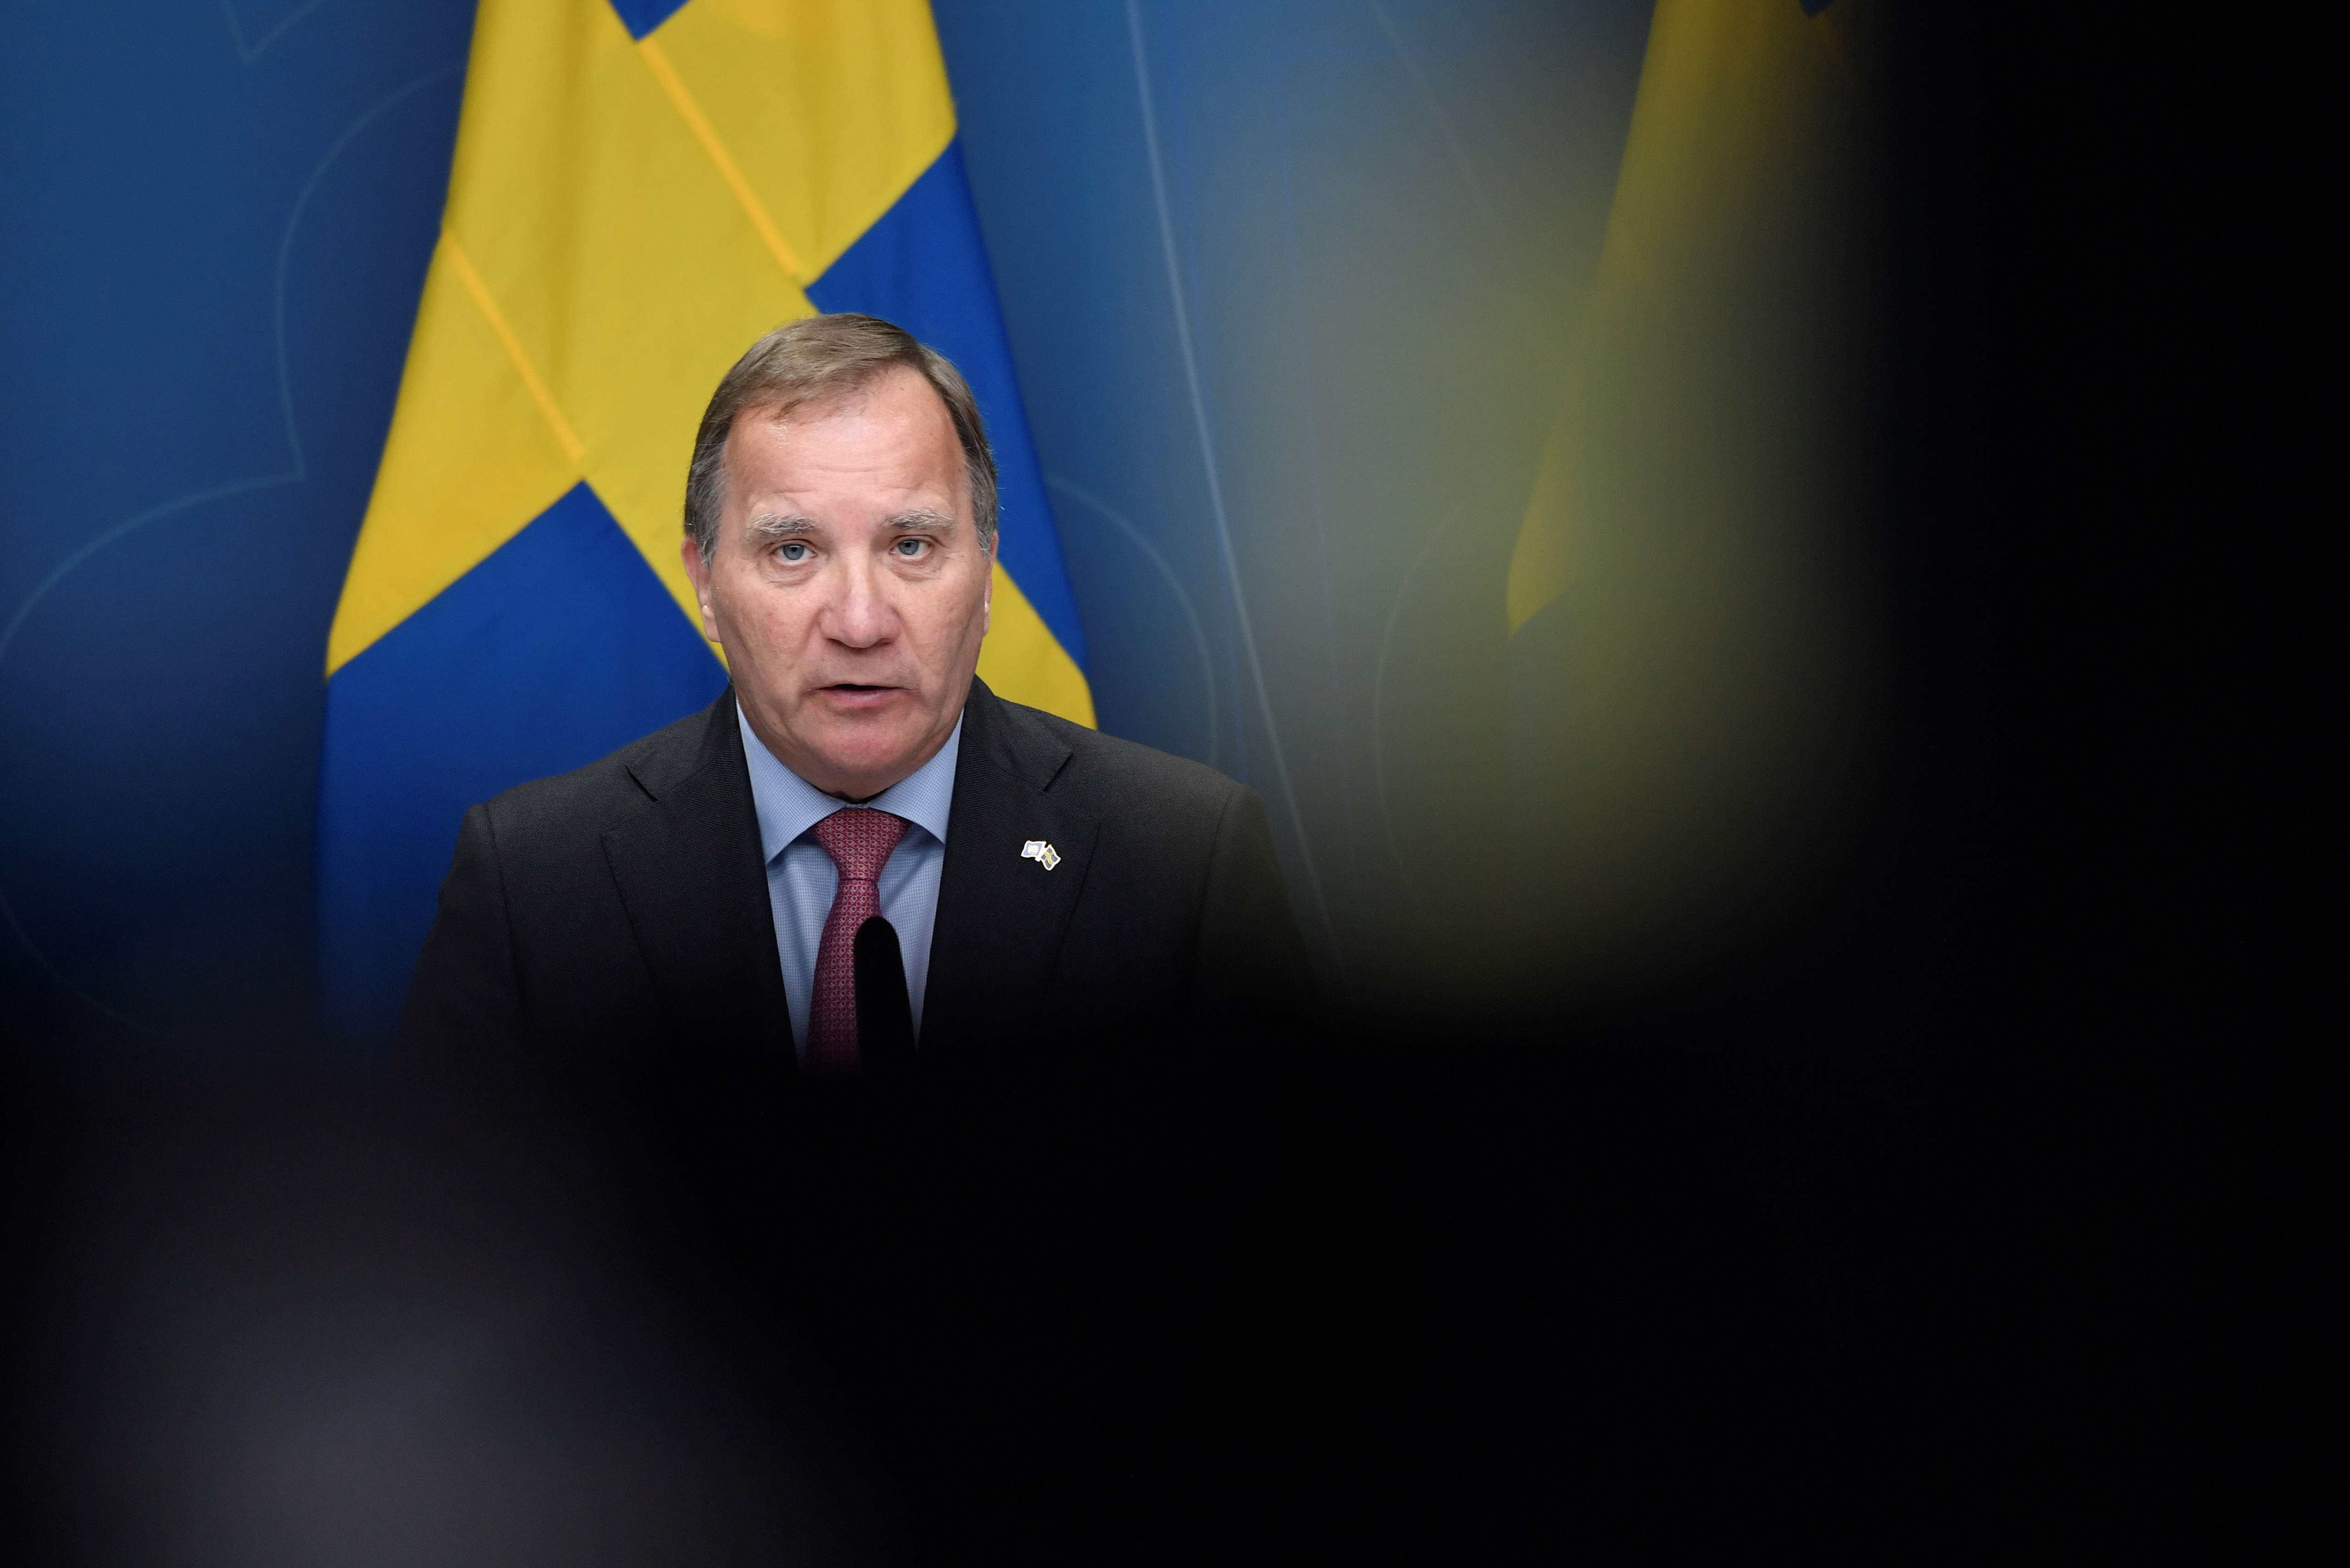 Sweden's Prime Minister Stefan Lofven holds a news conference in Stockholm